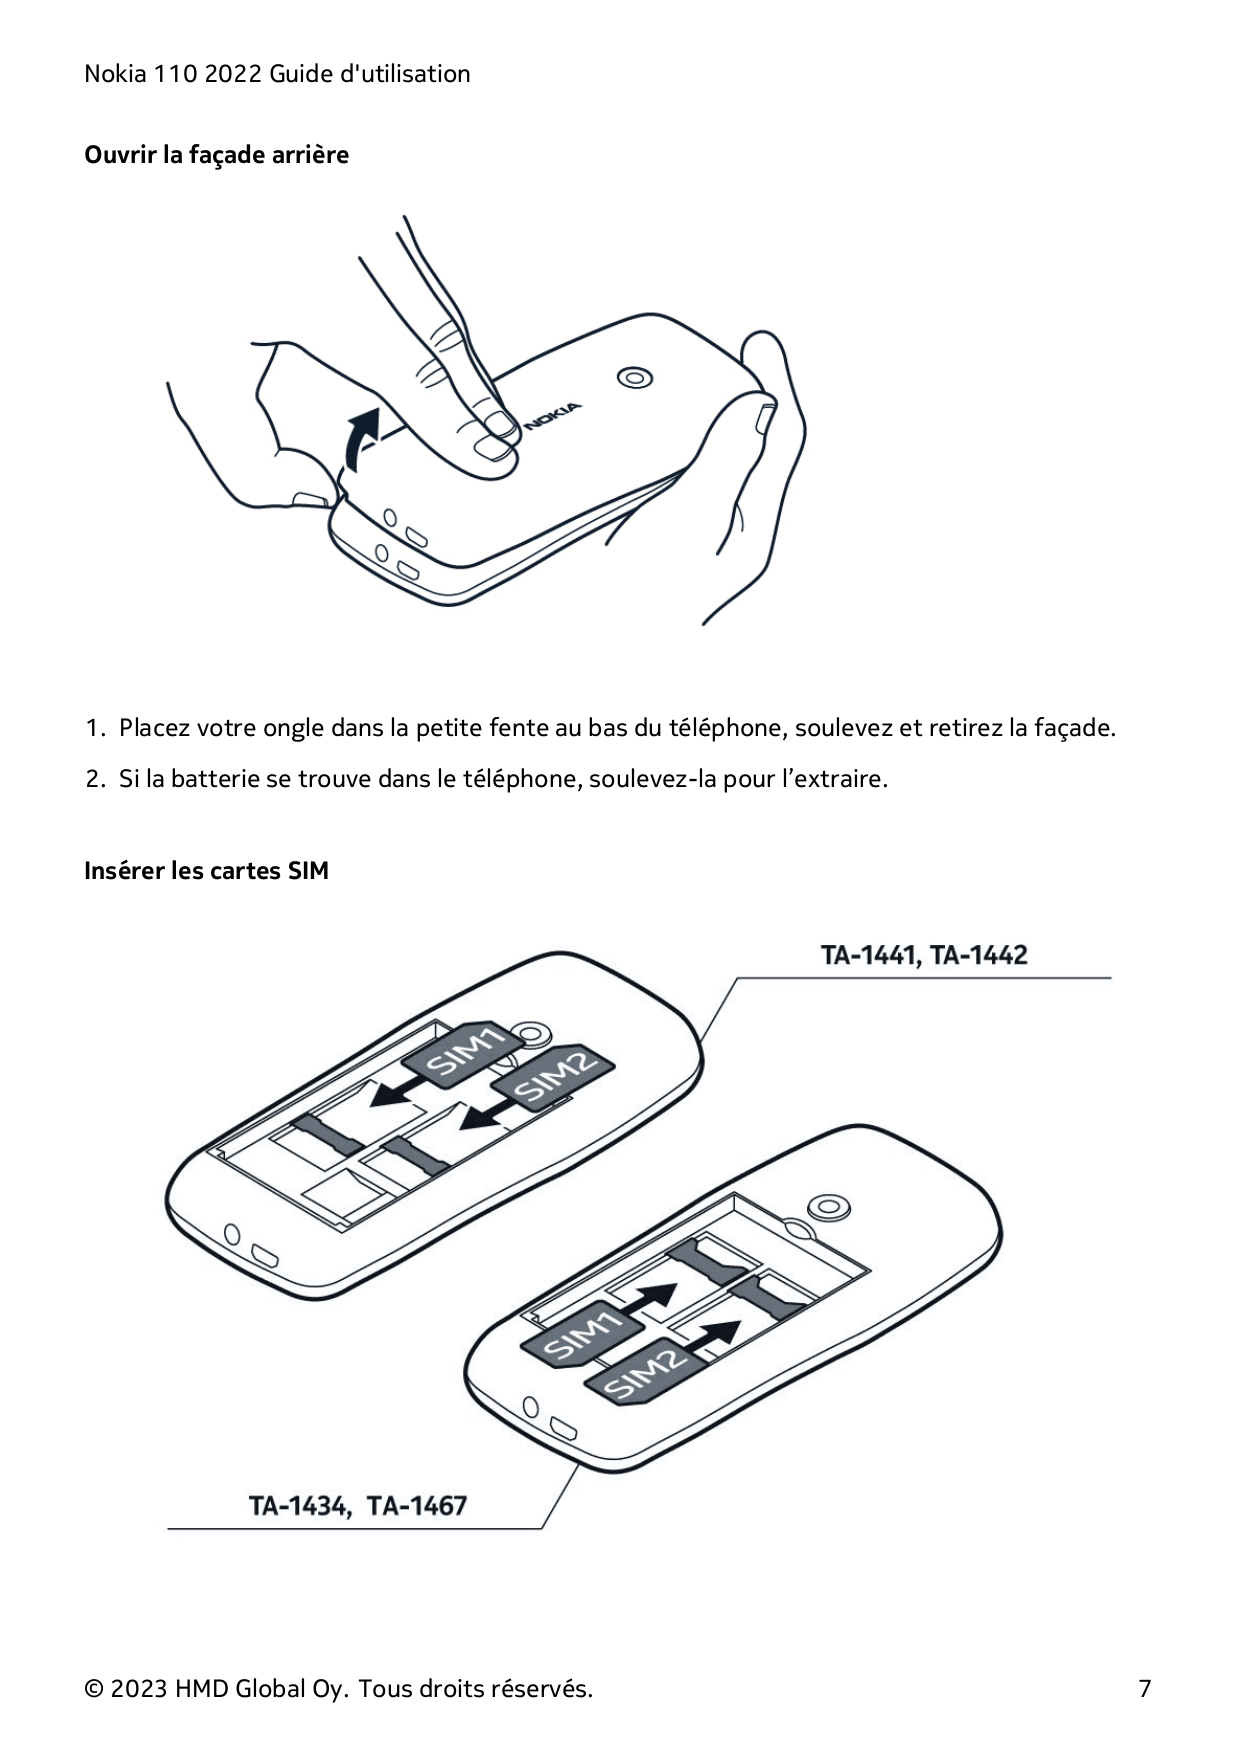 Nokia 110 2022 Guide d'utilisationOuvrir la façade arrière1. Placez votre ongle dans la petite fente au bas du téléphone, soulev